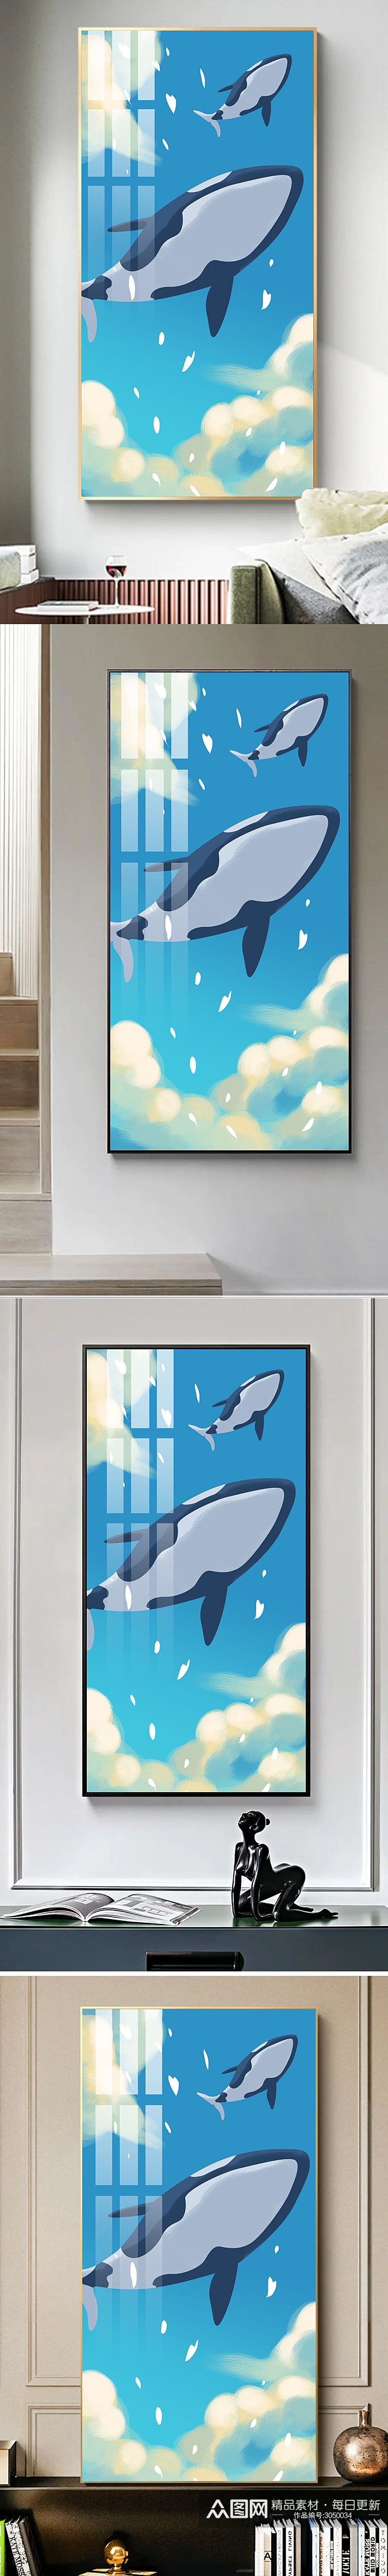 可爱卡通天空鲸鱼儿童房装饰画素材